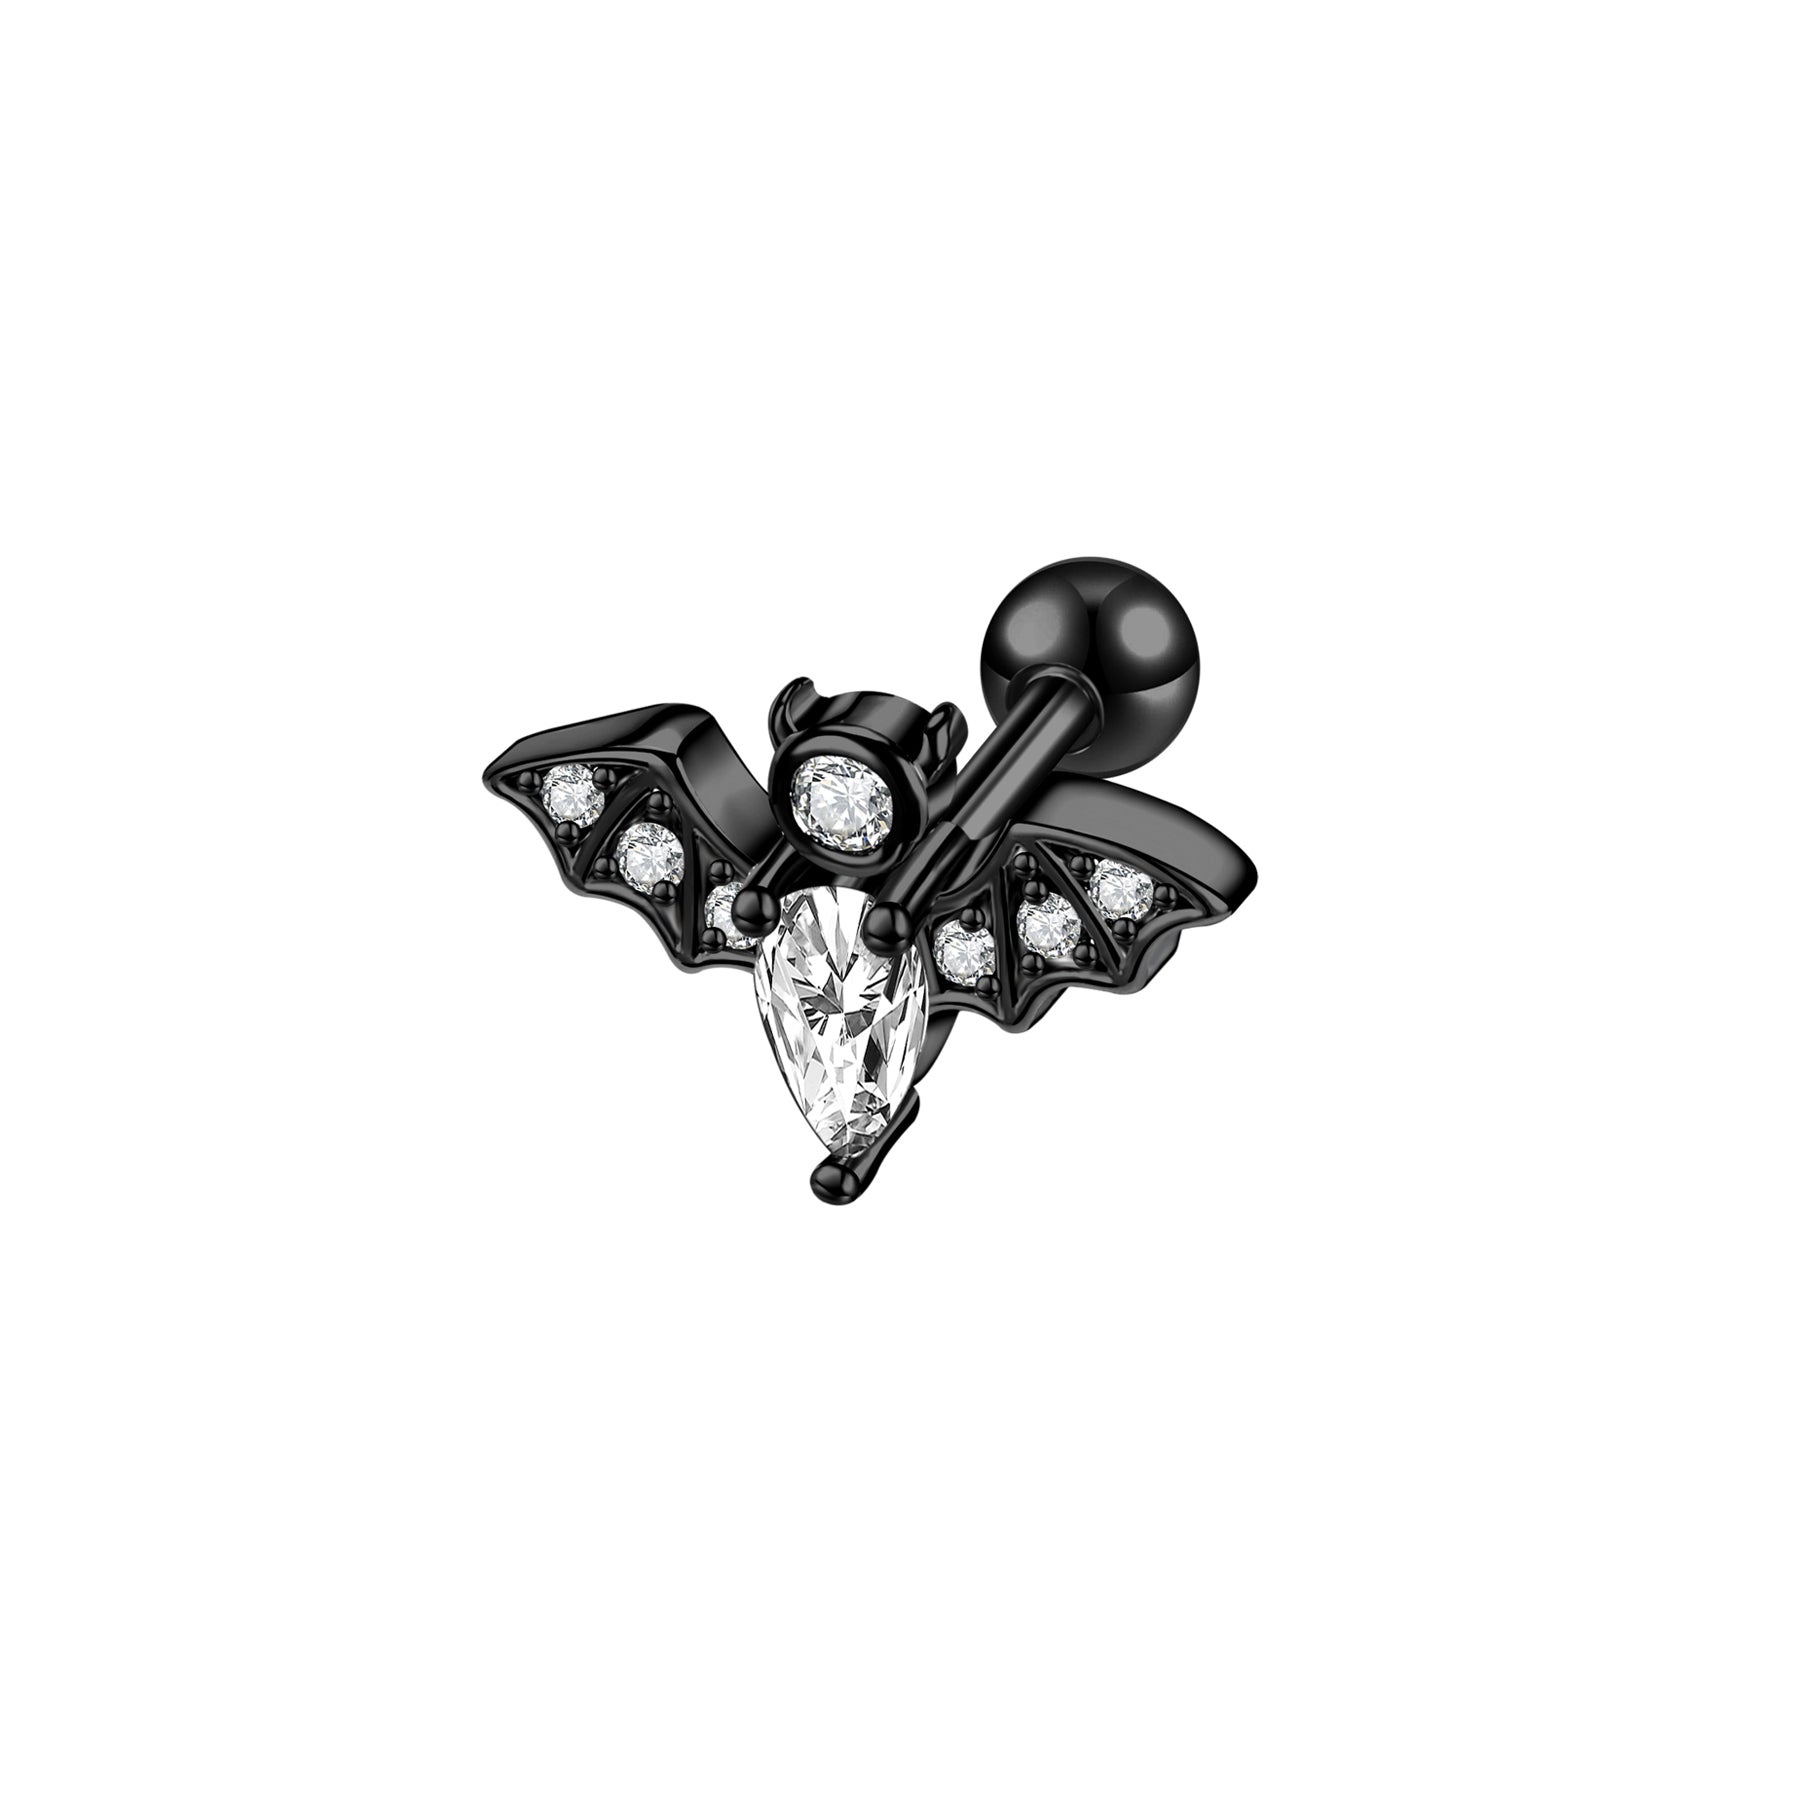 16G Bat Crystal Stud Earring Punk Style Ear Stud Jewelry